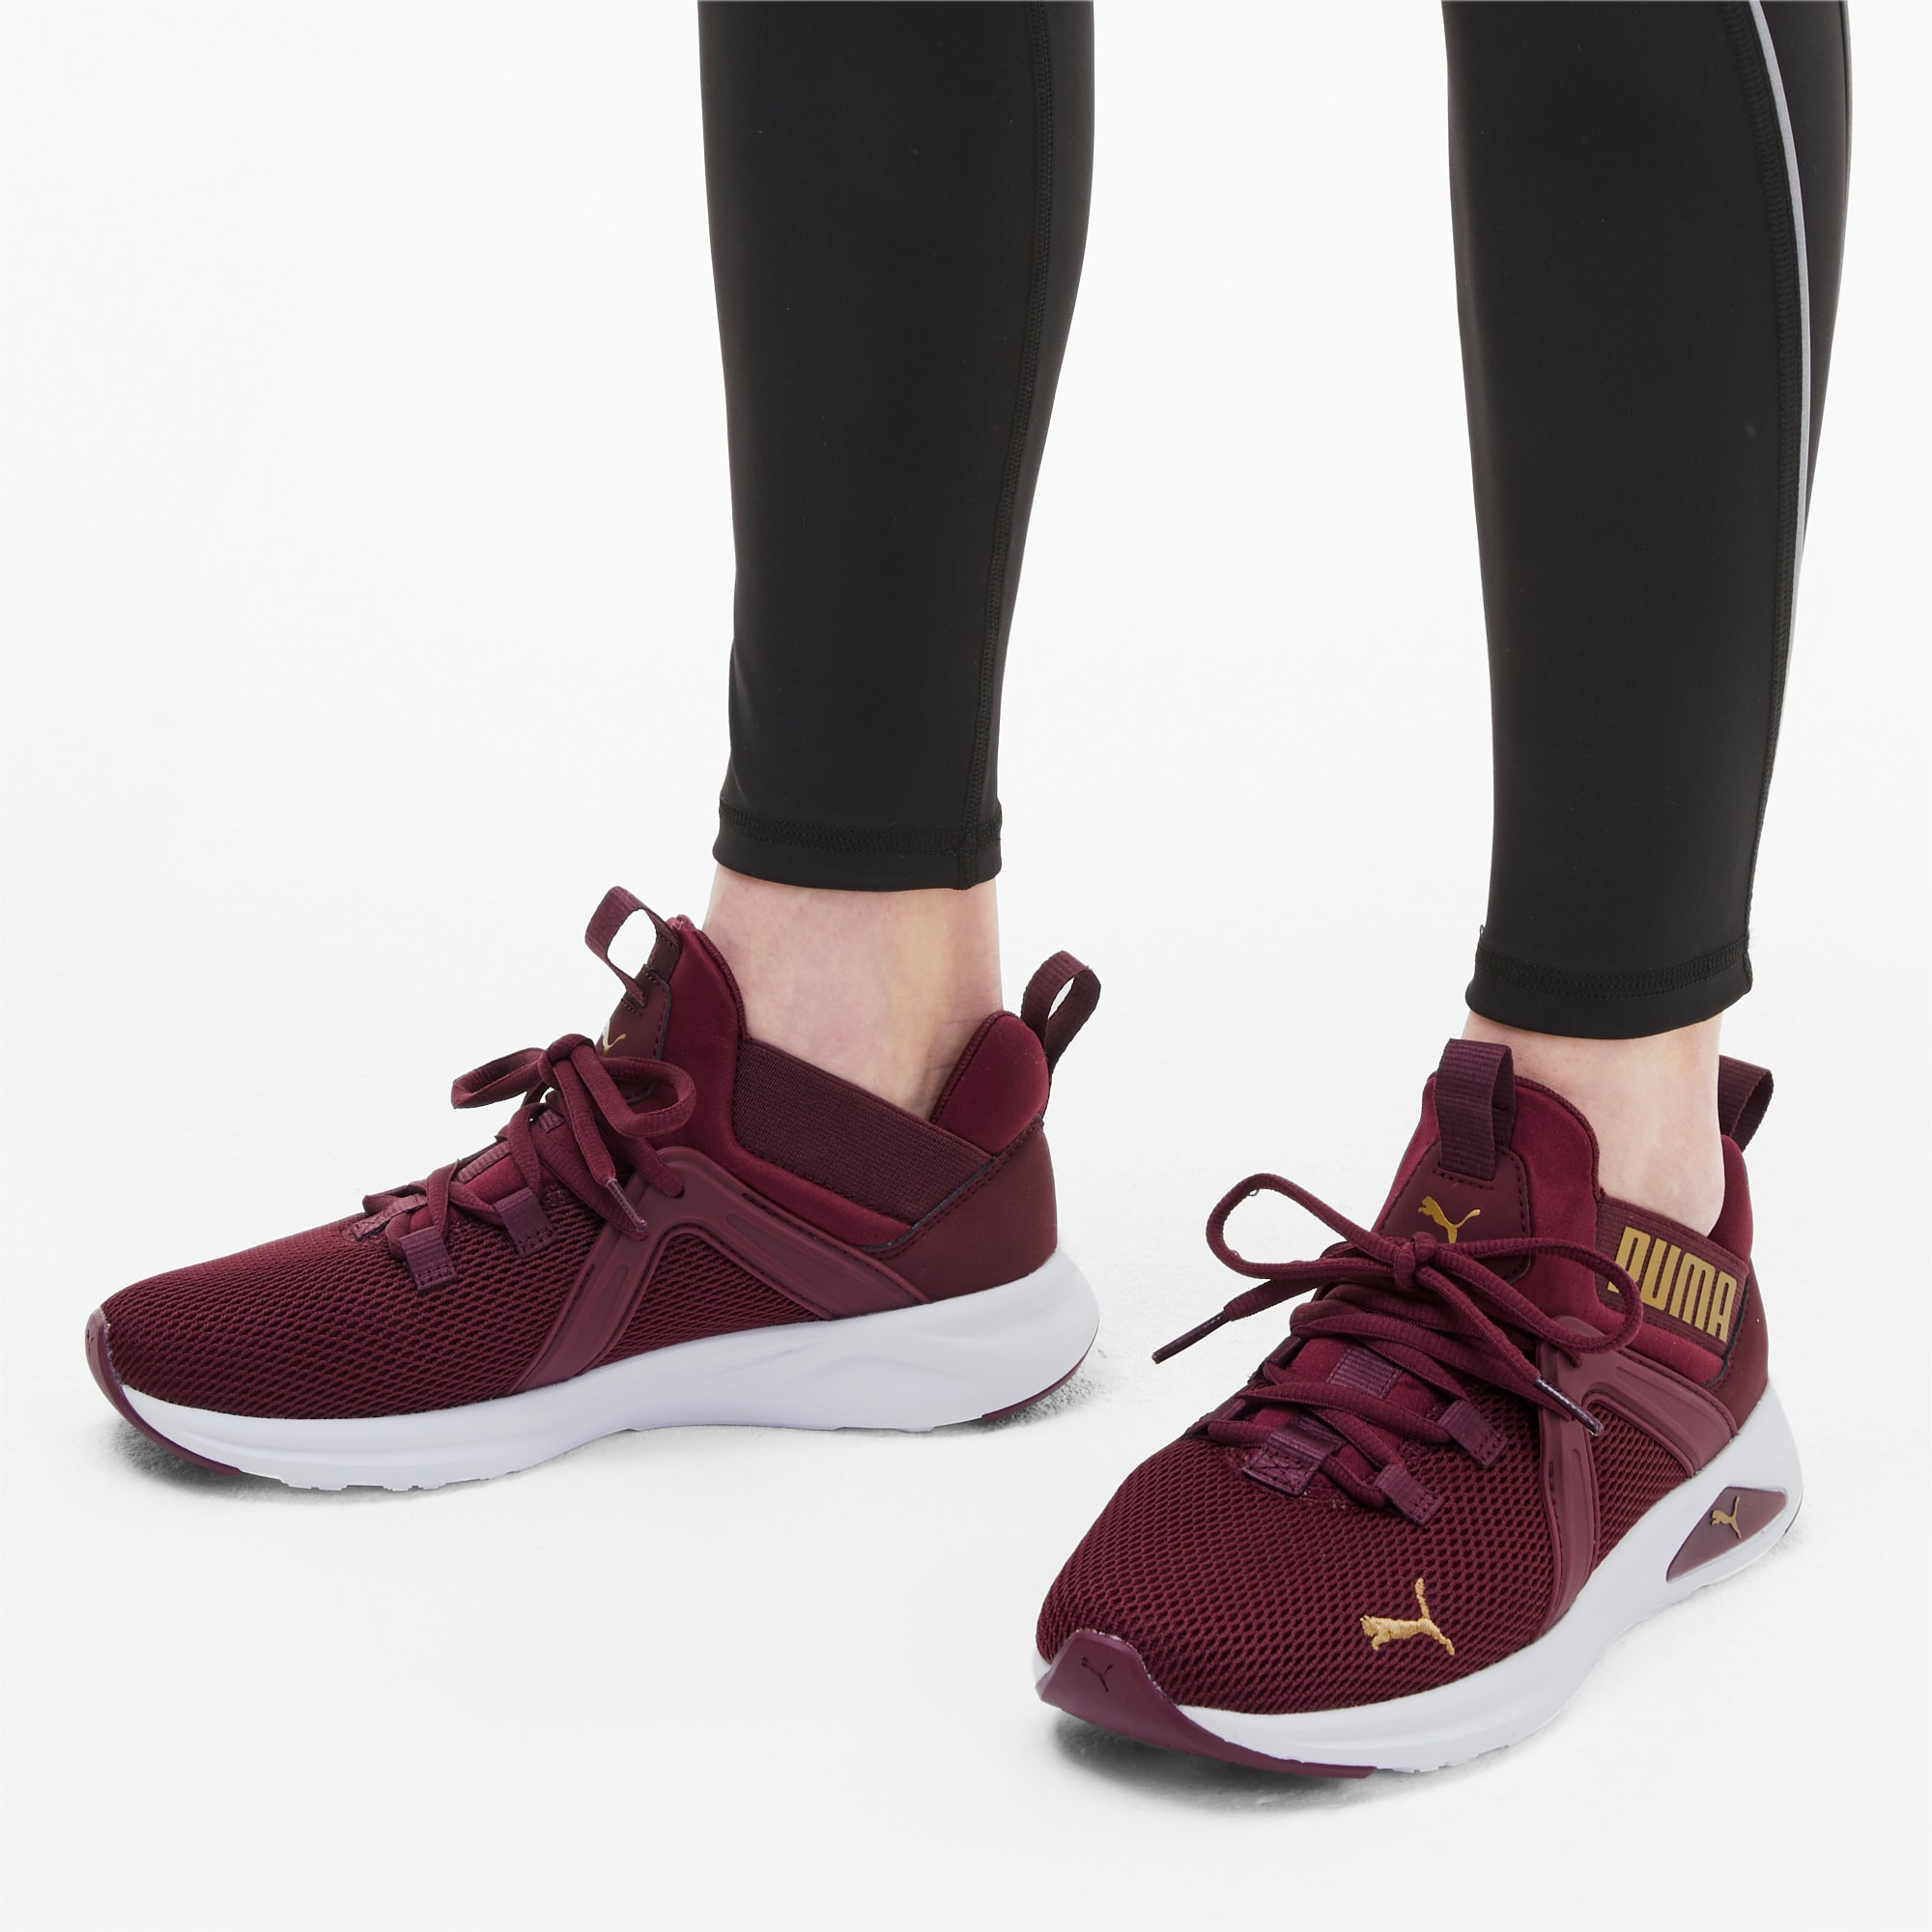 burgundy womens running shoes